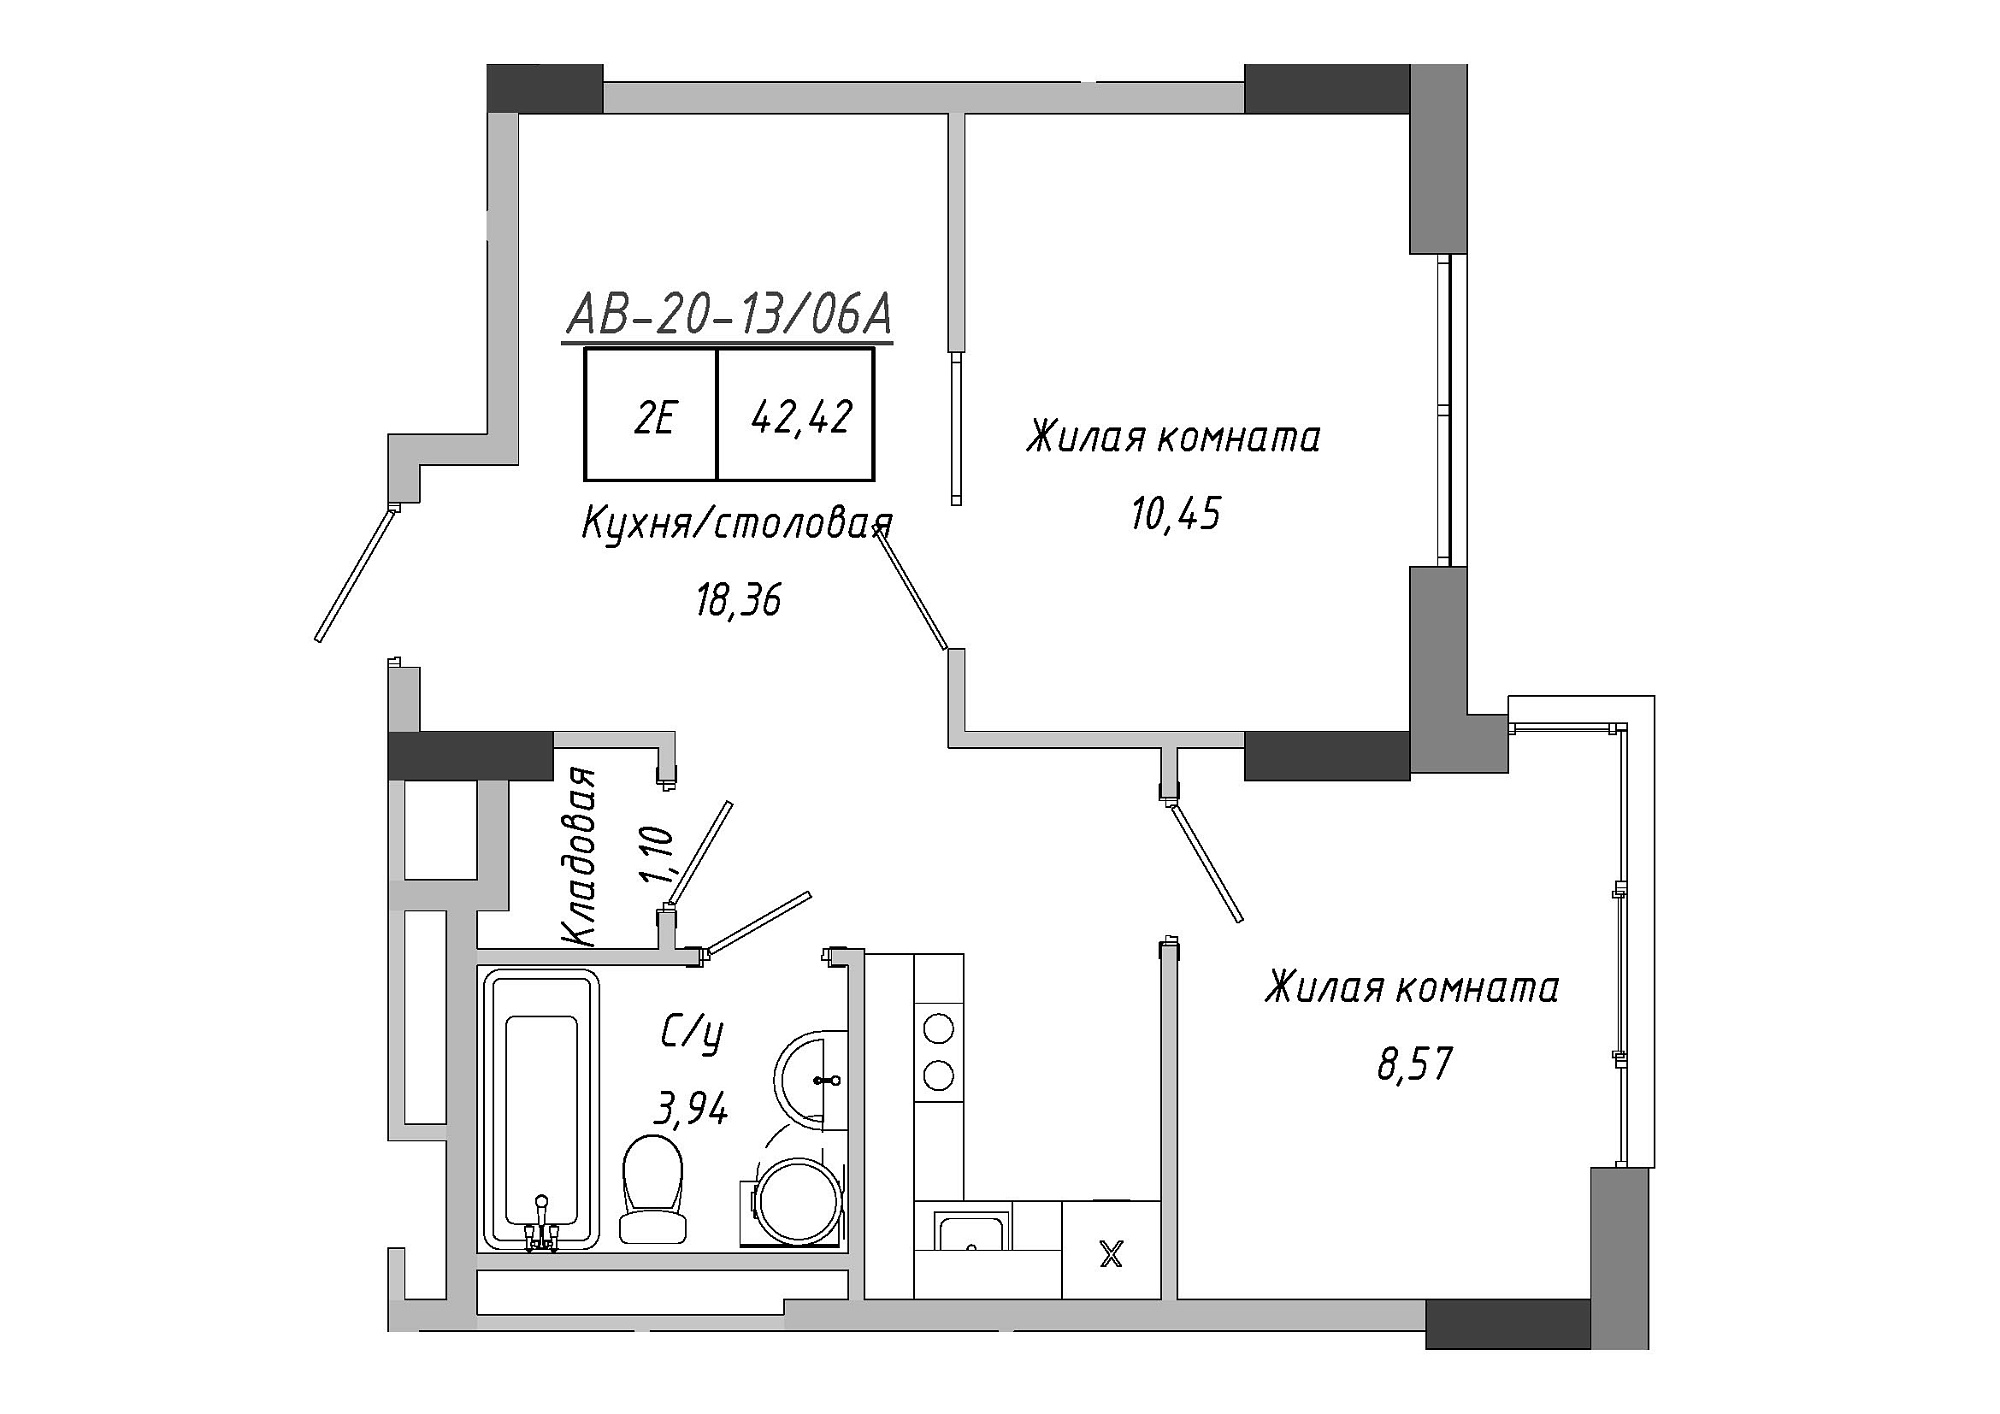 Планировка 2-к квартира площей 42.42м2, AB-20-13/0106a.